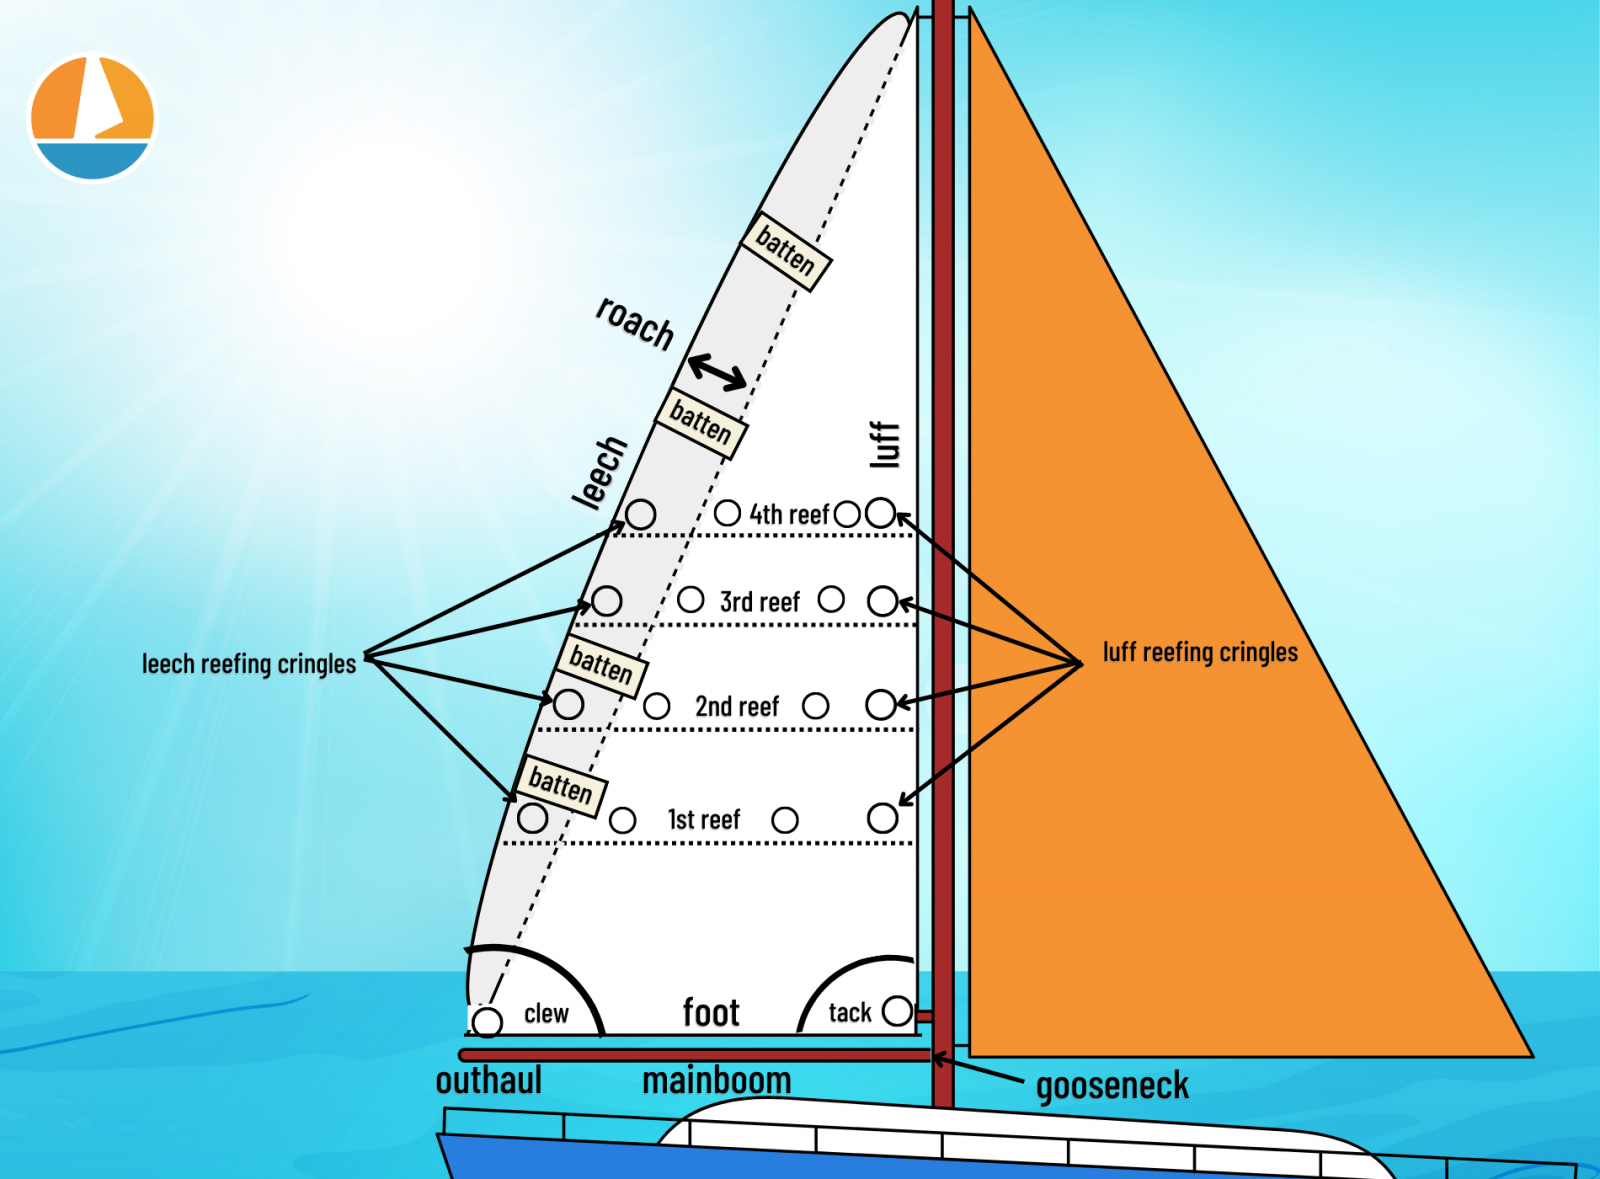 sailboat mainsail jib